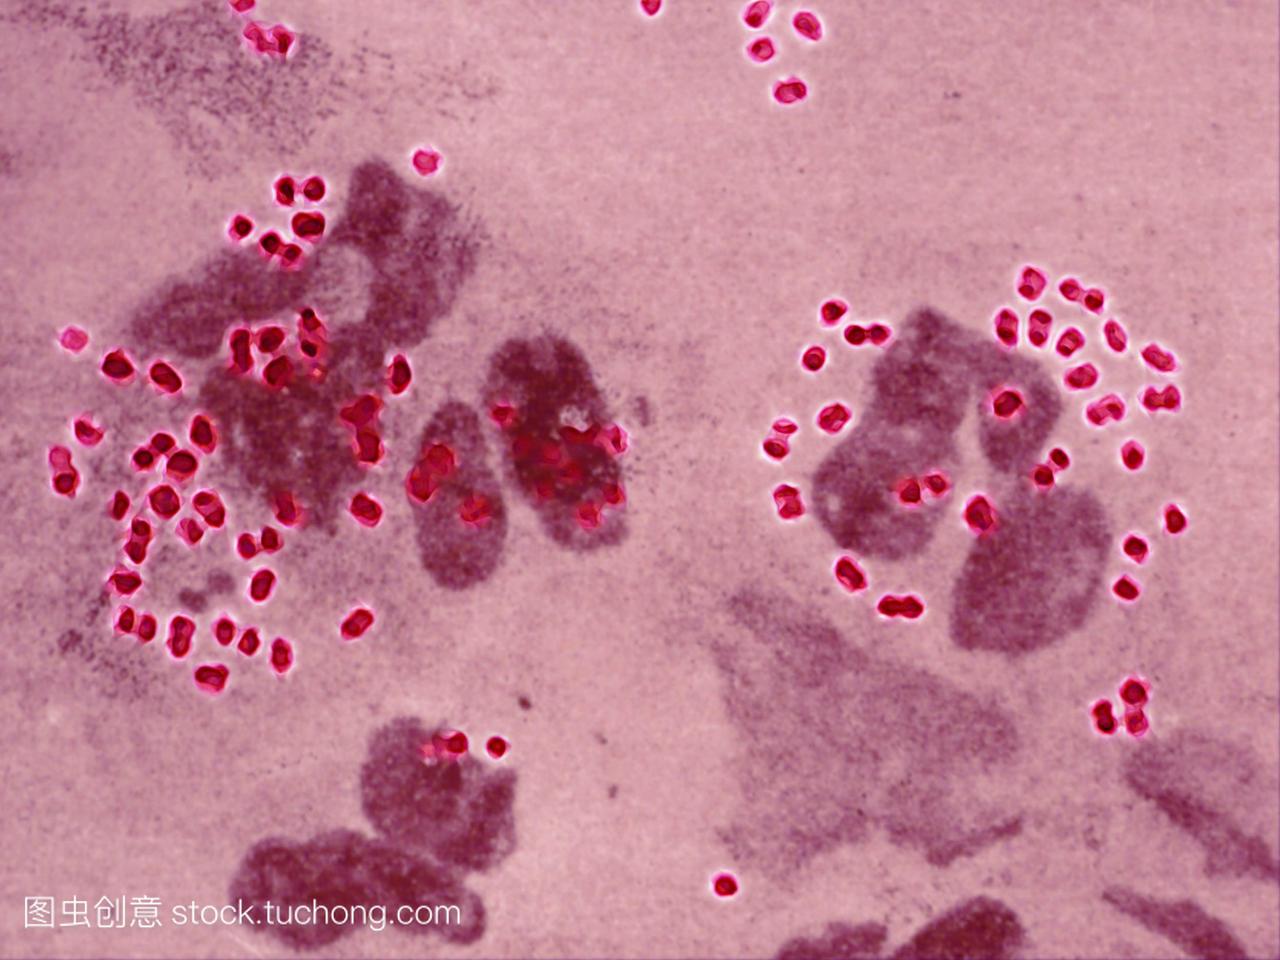 淋球菌淋病奈瑟菌是对淋病的治疗。在男性中,